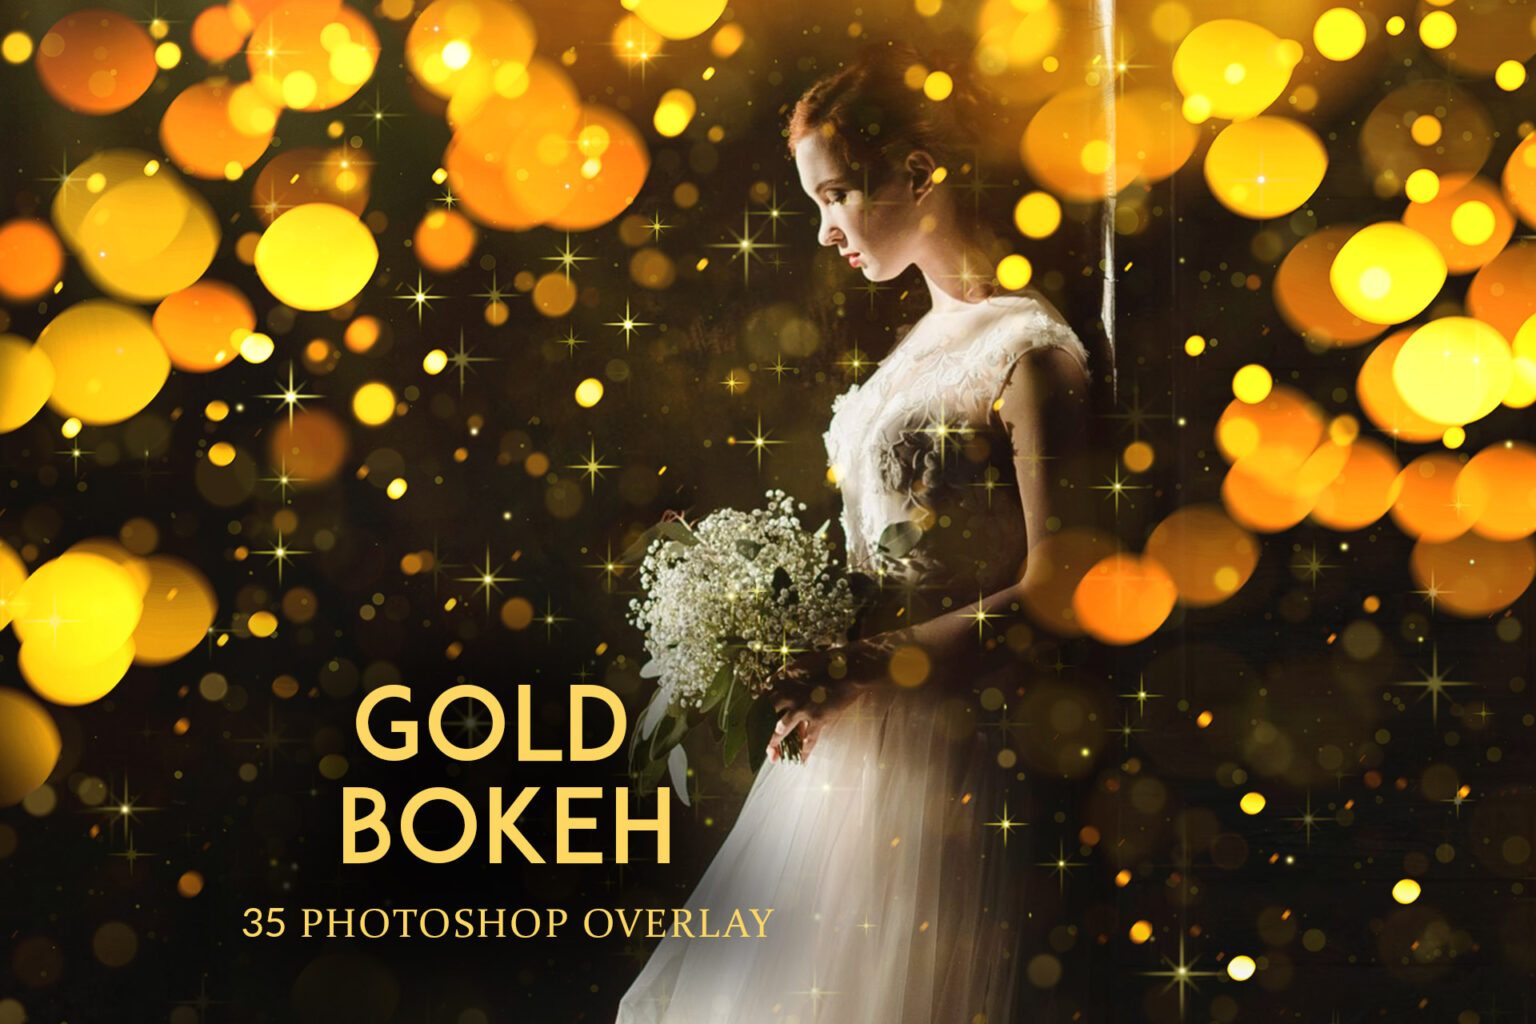 gold bokeh photoshop